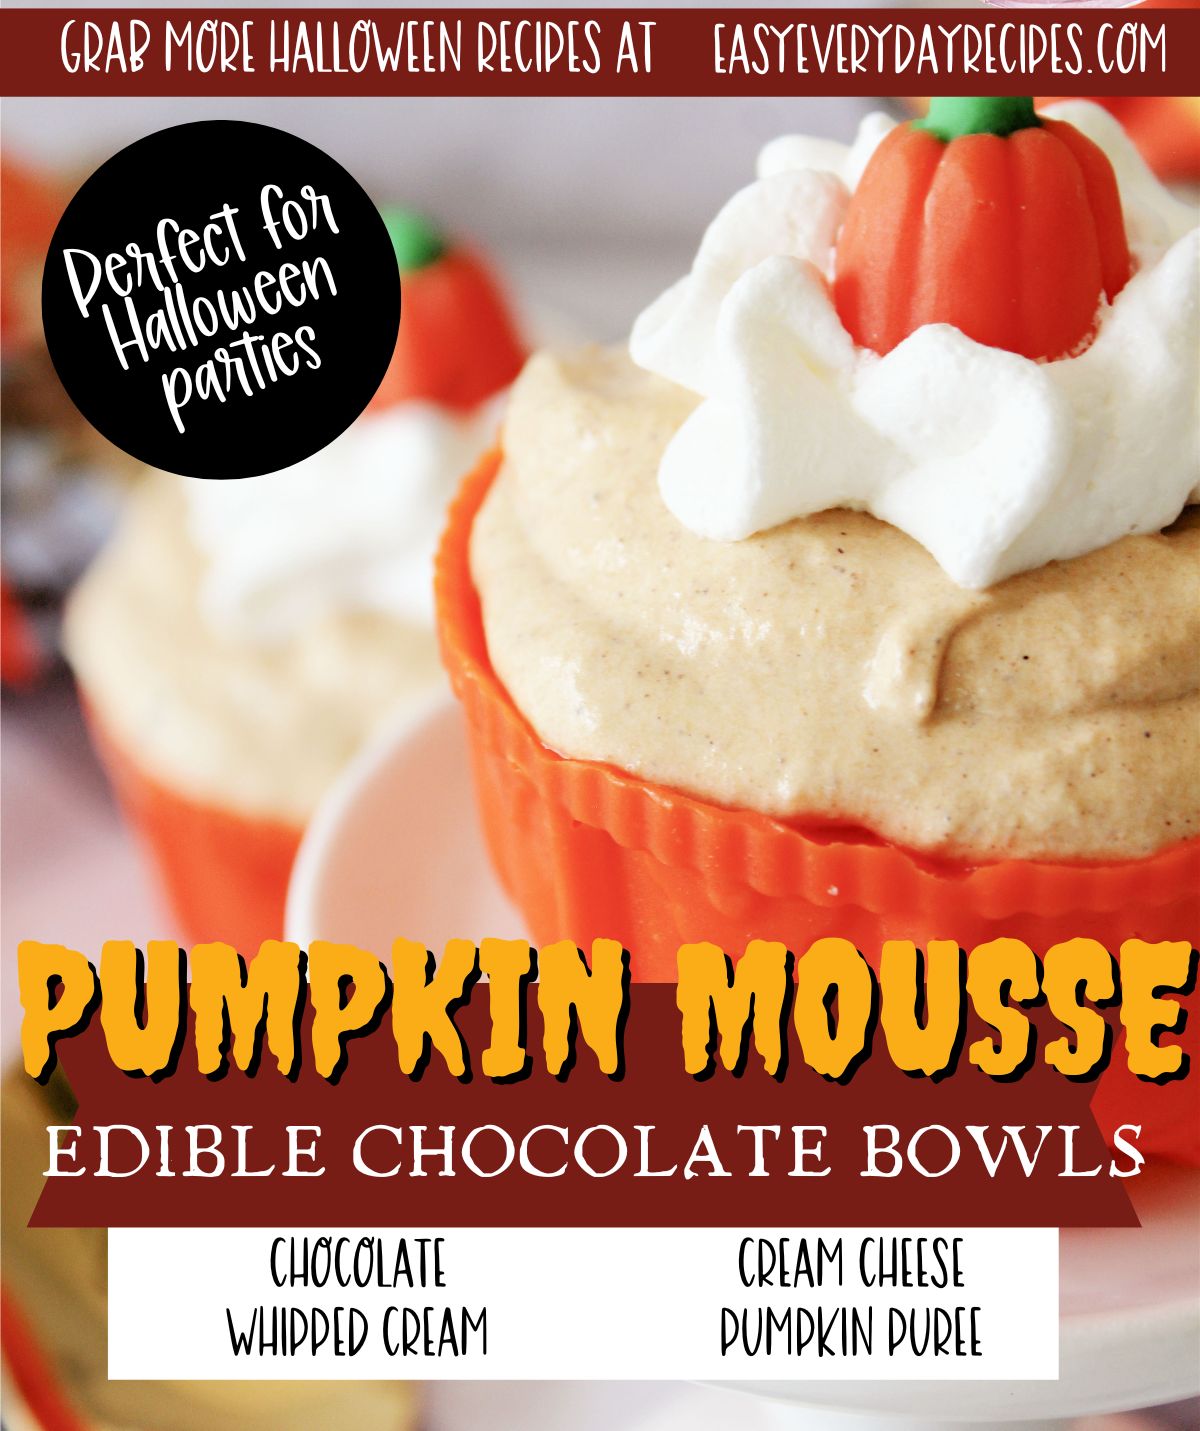 Pumpkin mousse edible chocolate bowls.